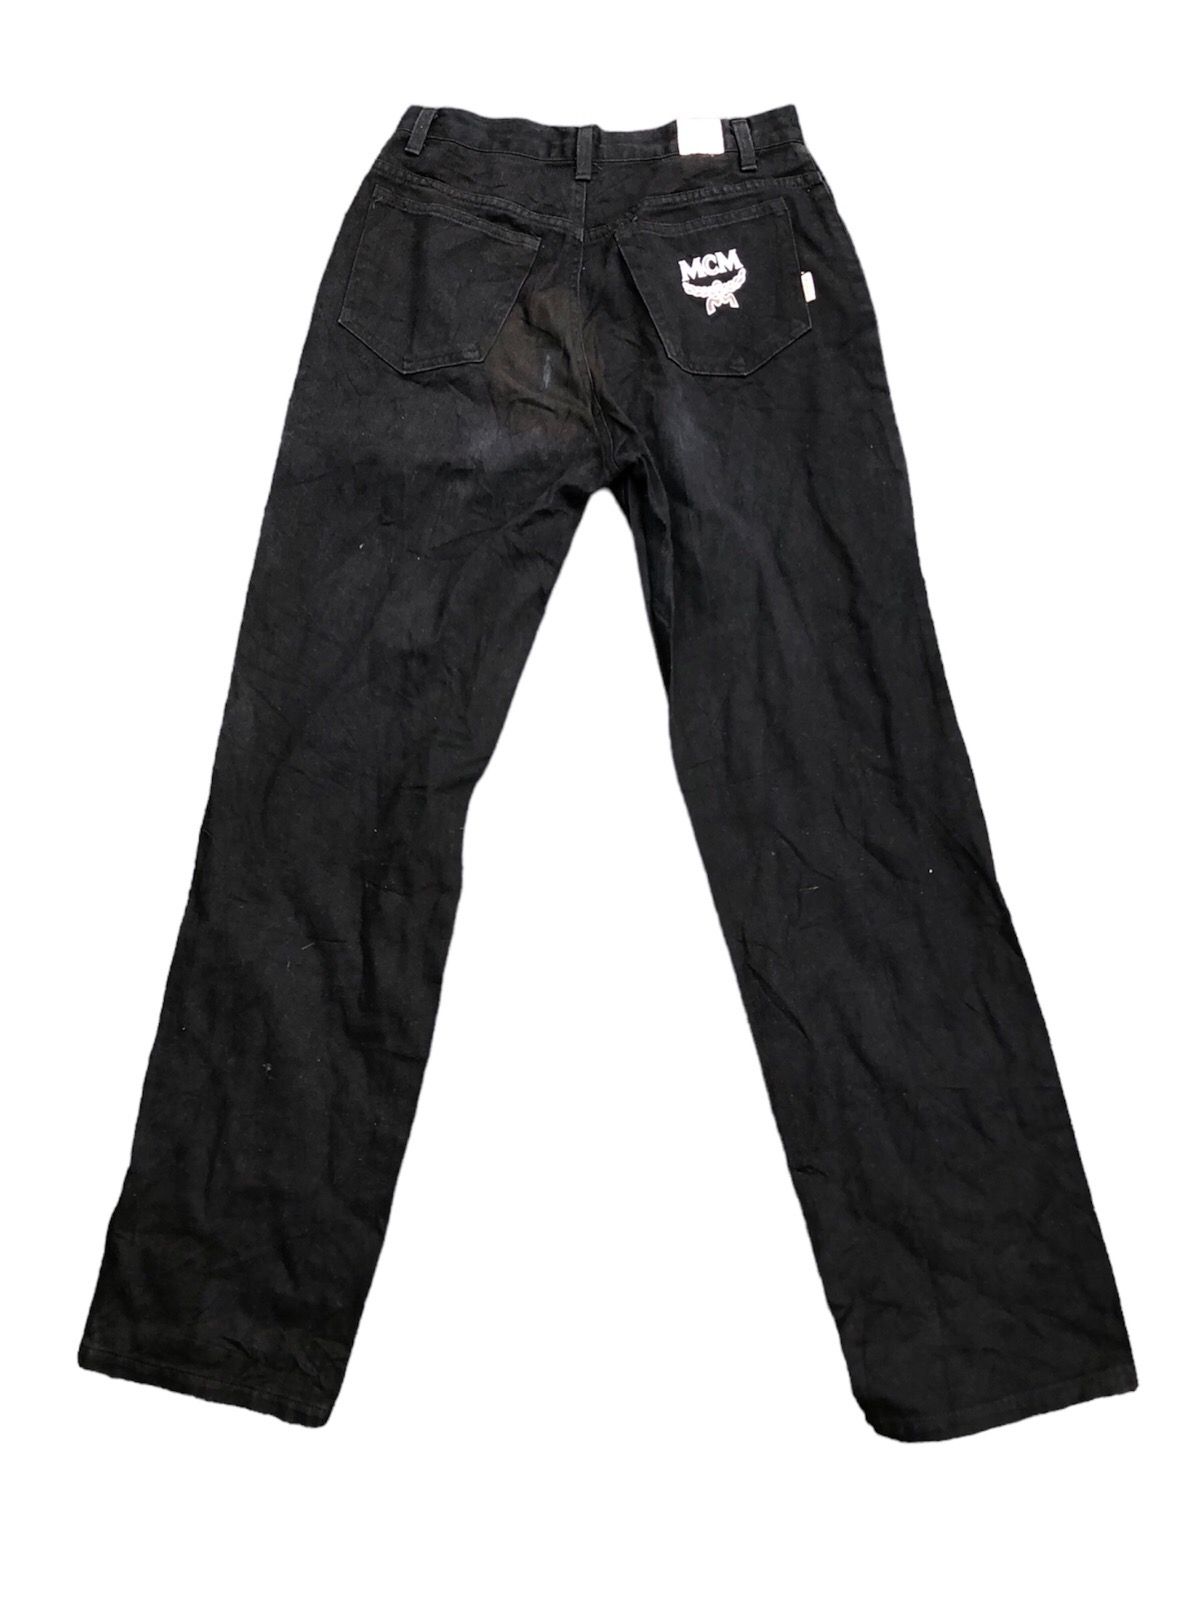 Vintage MCM Blue Black Denim Jeans - 1